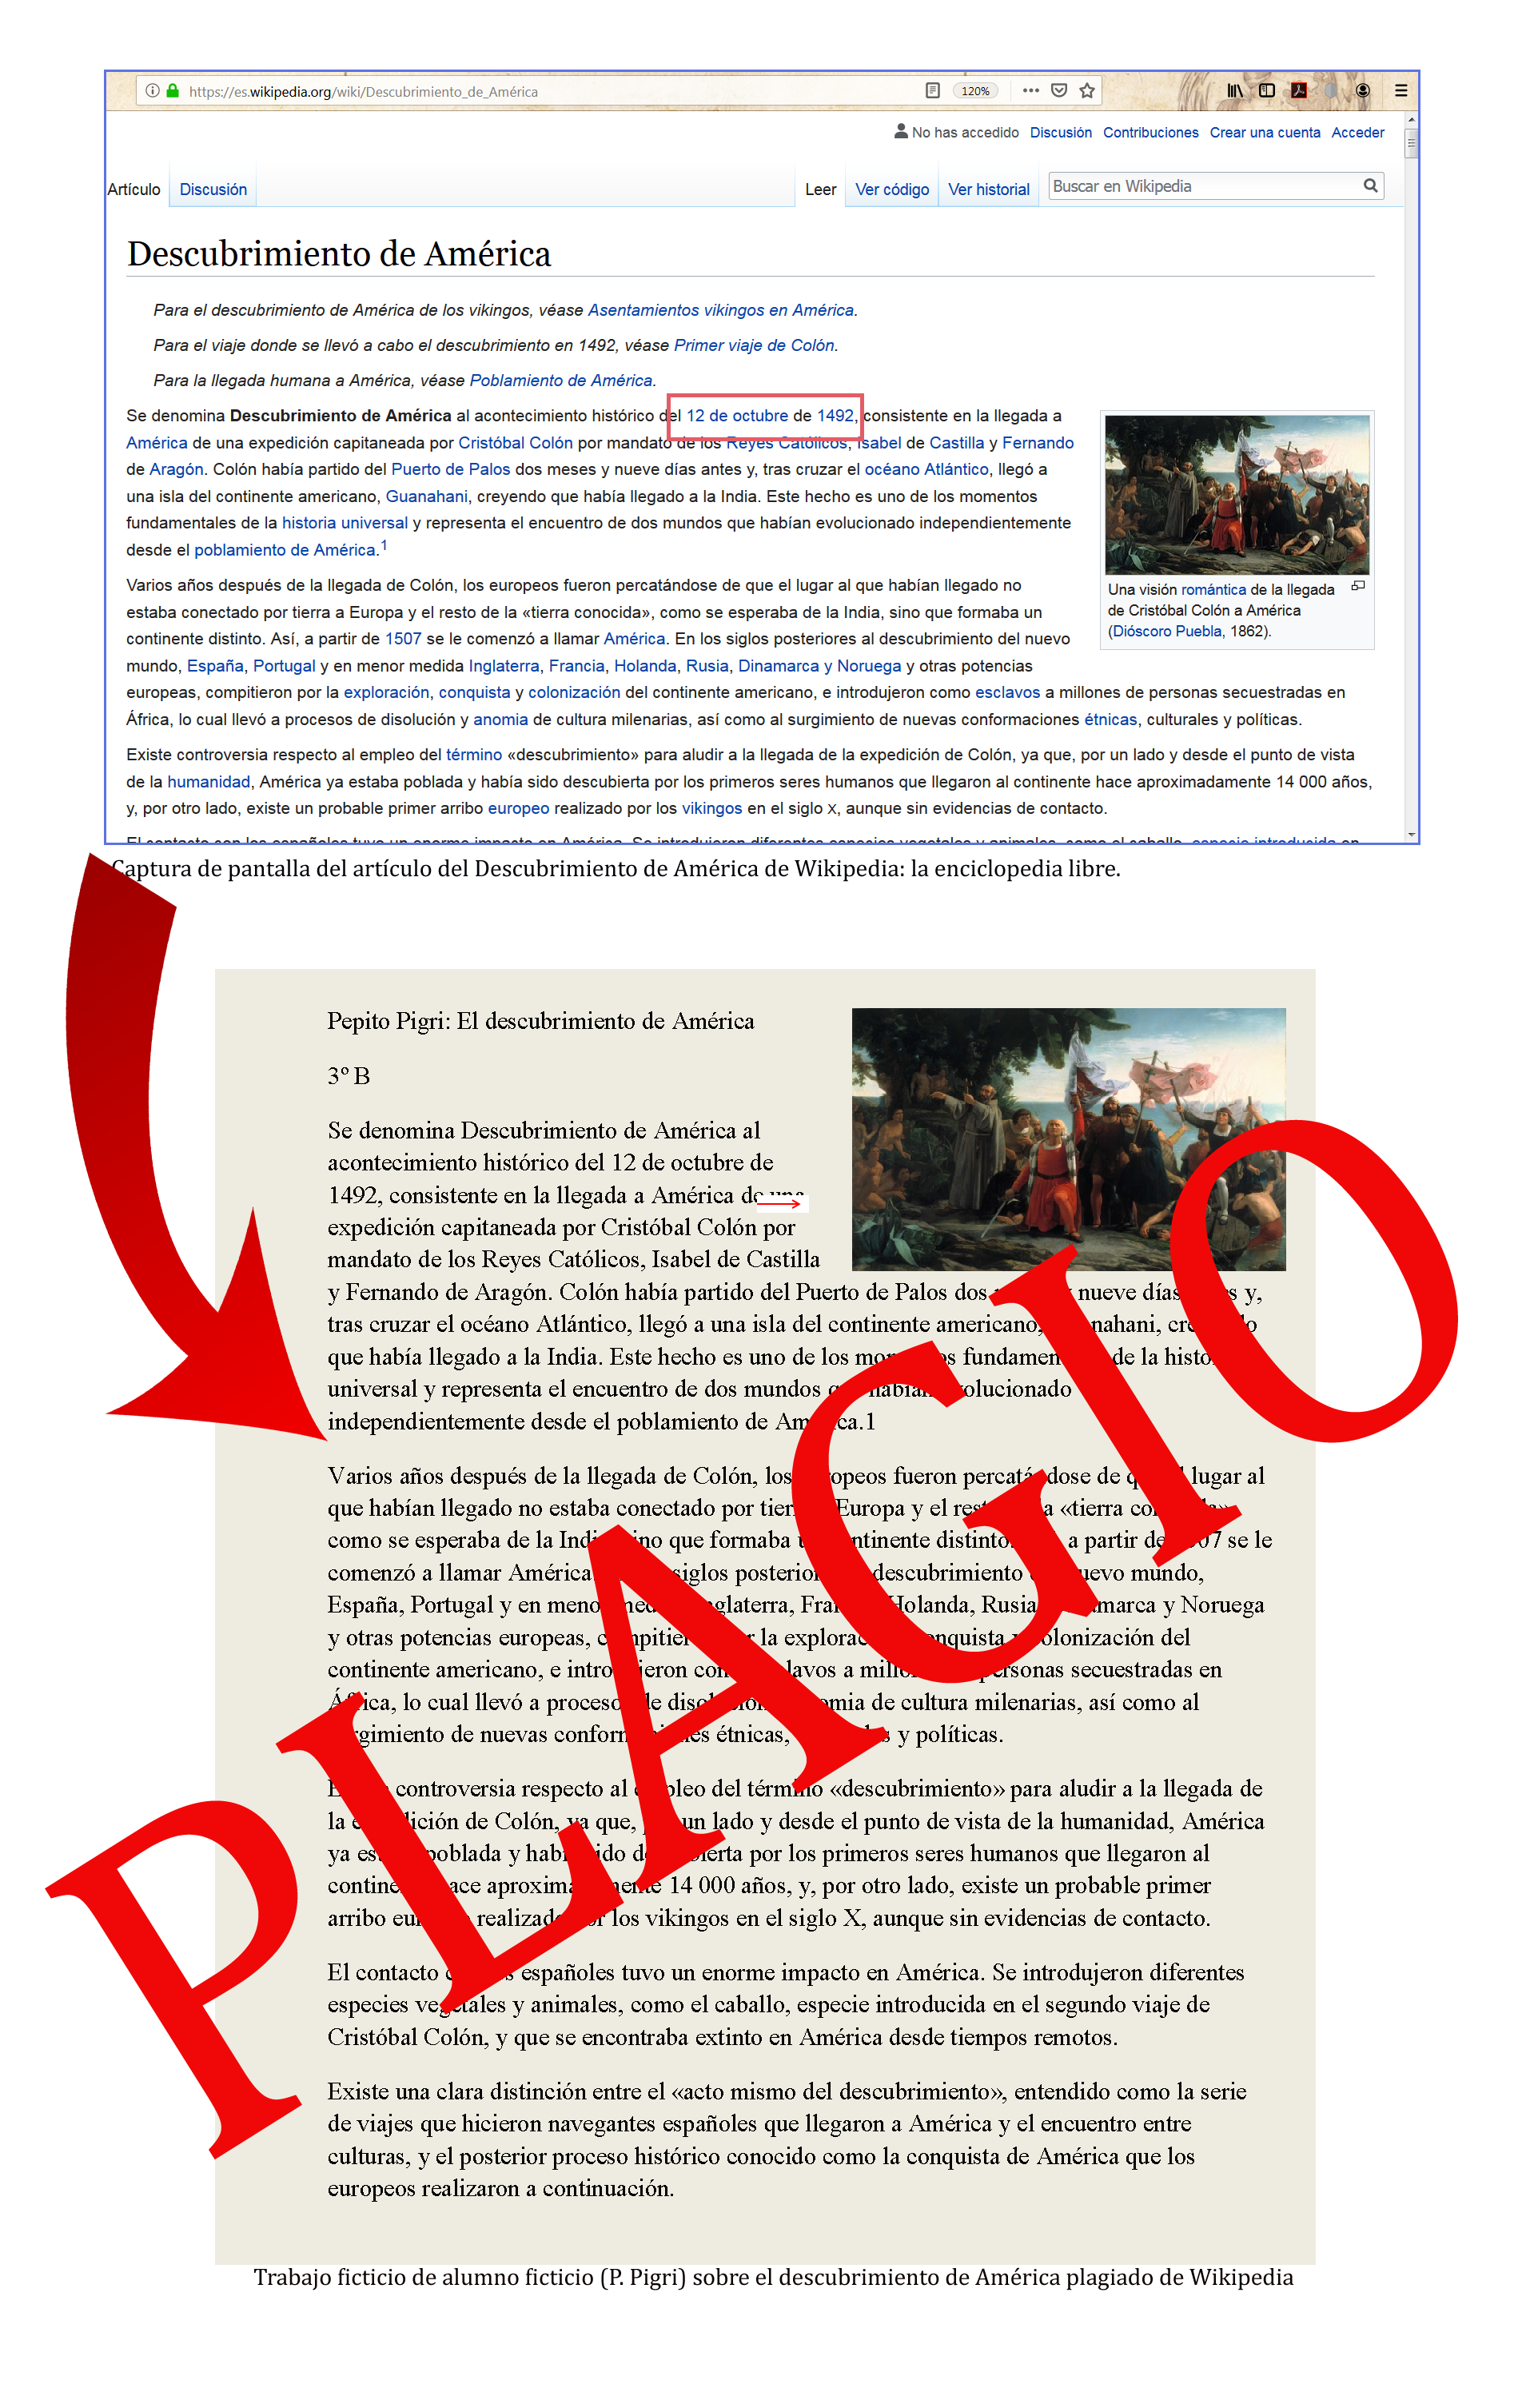 el artículo de Wikipedia sobre el descubirimiento de América ha sido plagiado por un estudiante (ficticio)